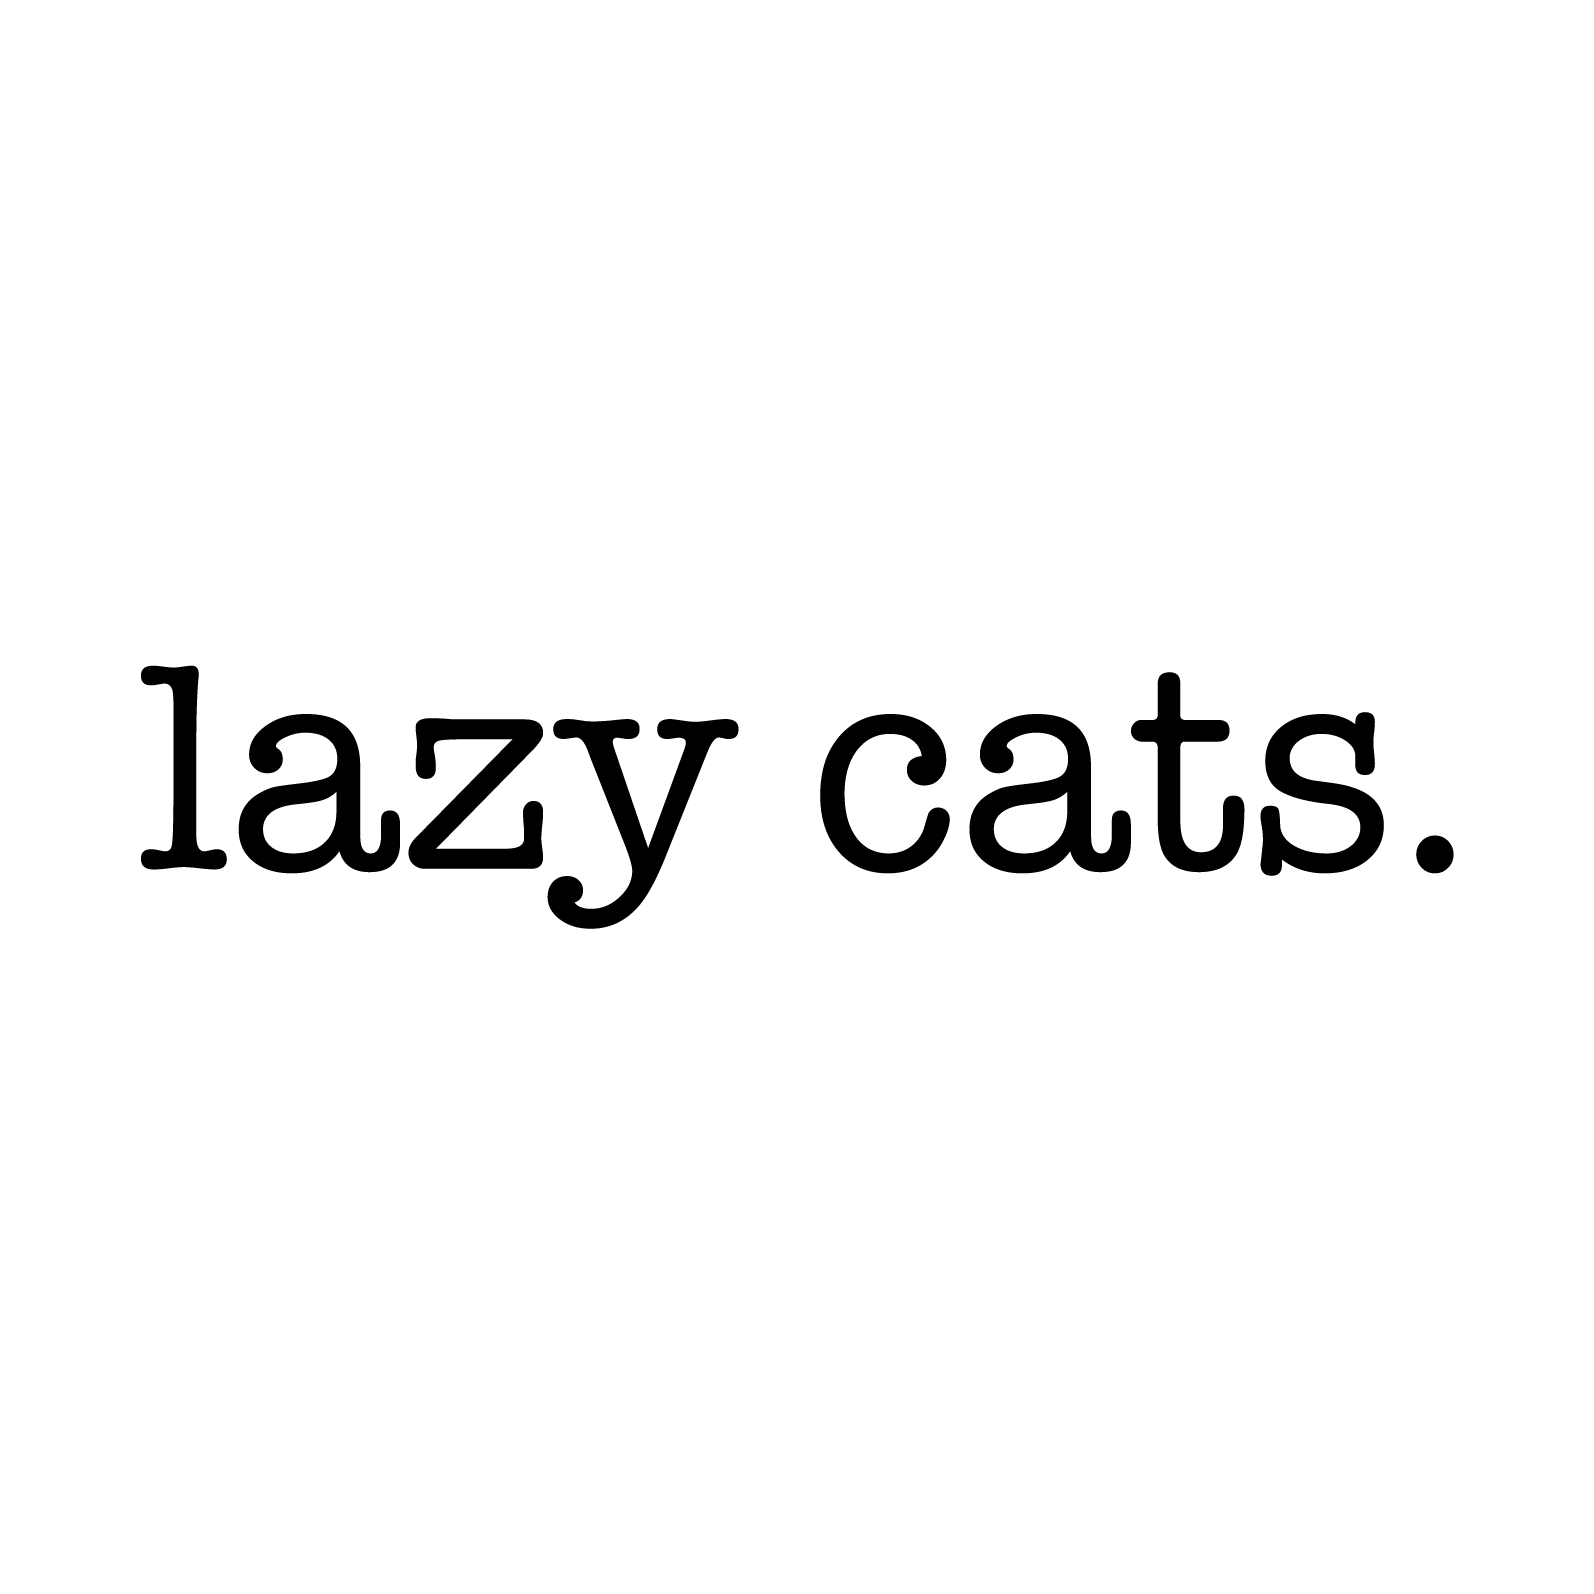 lazy cats. cafe